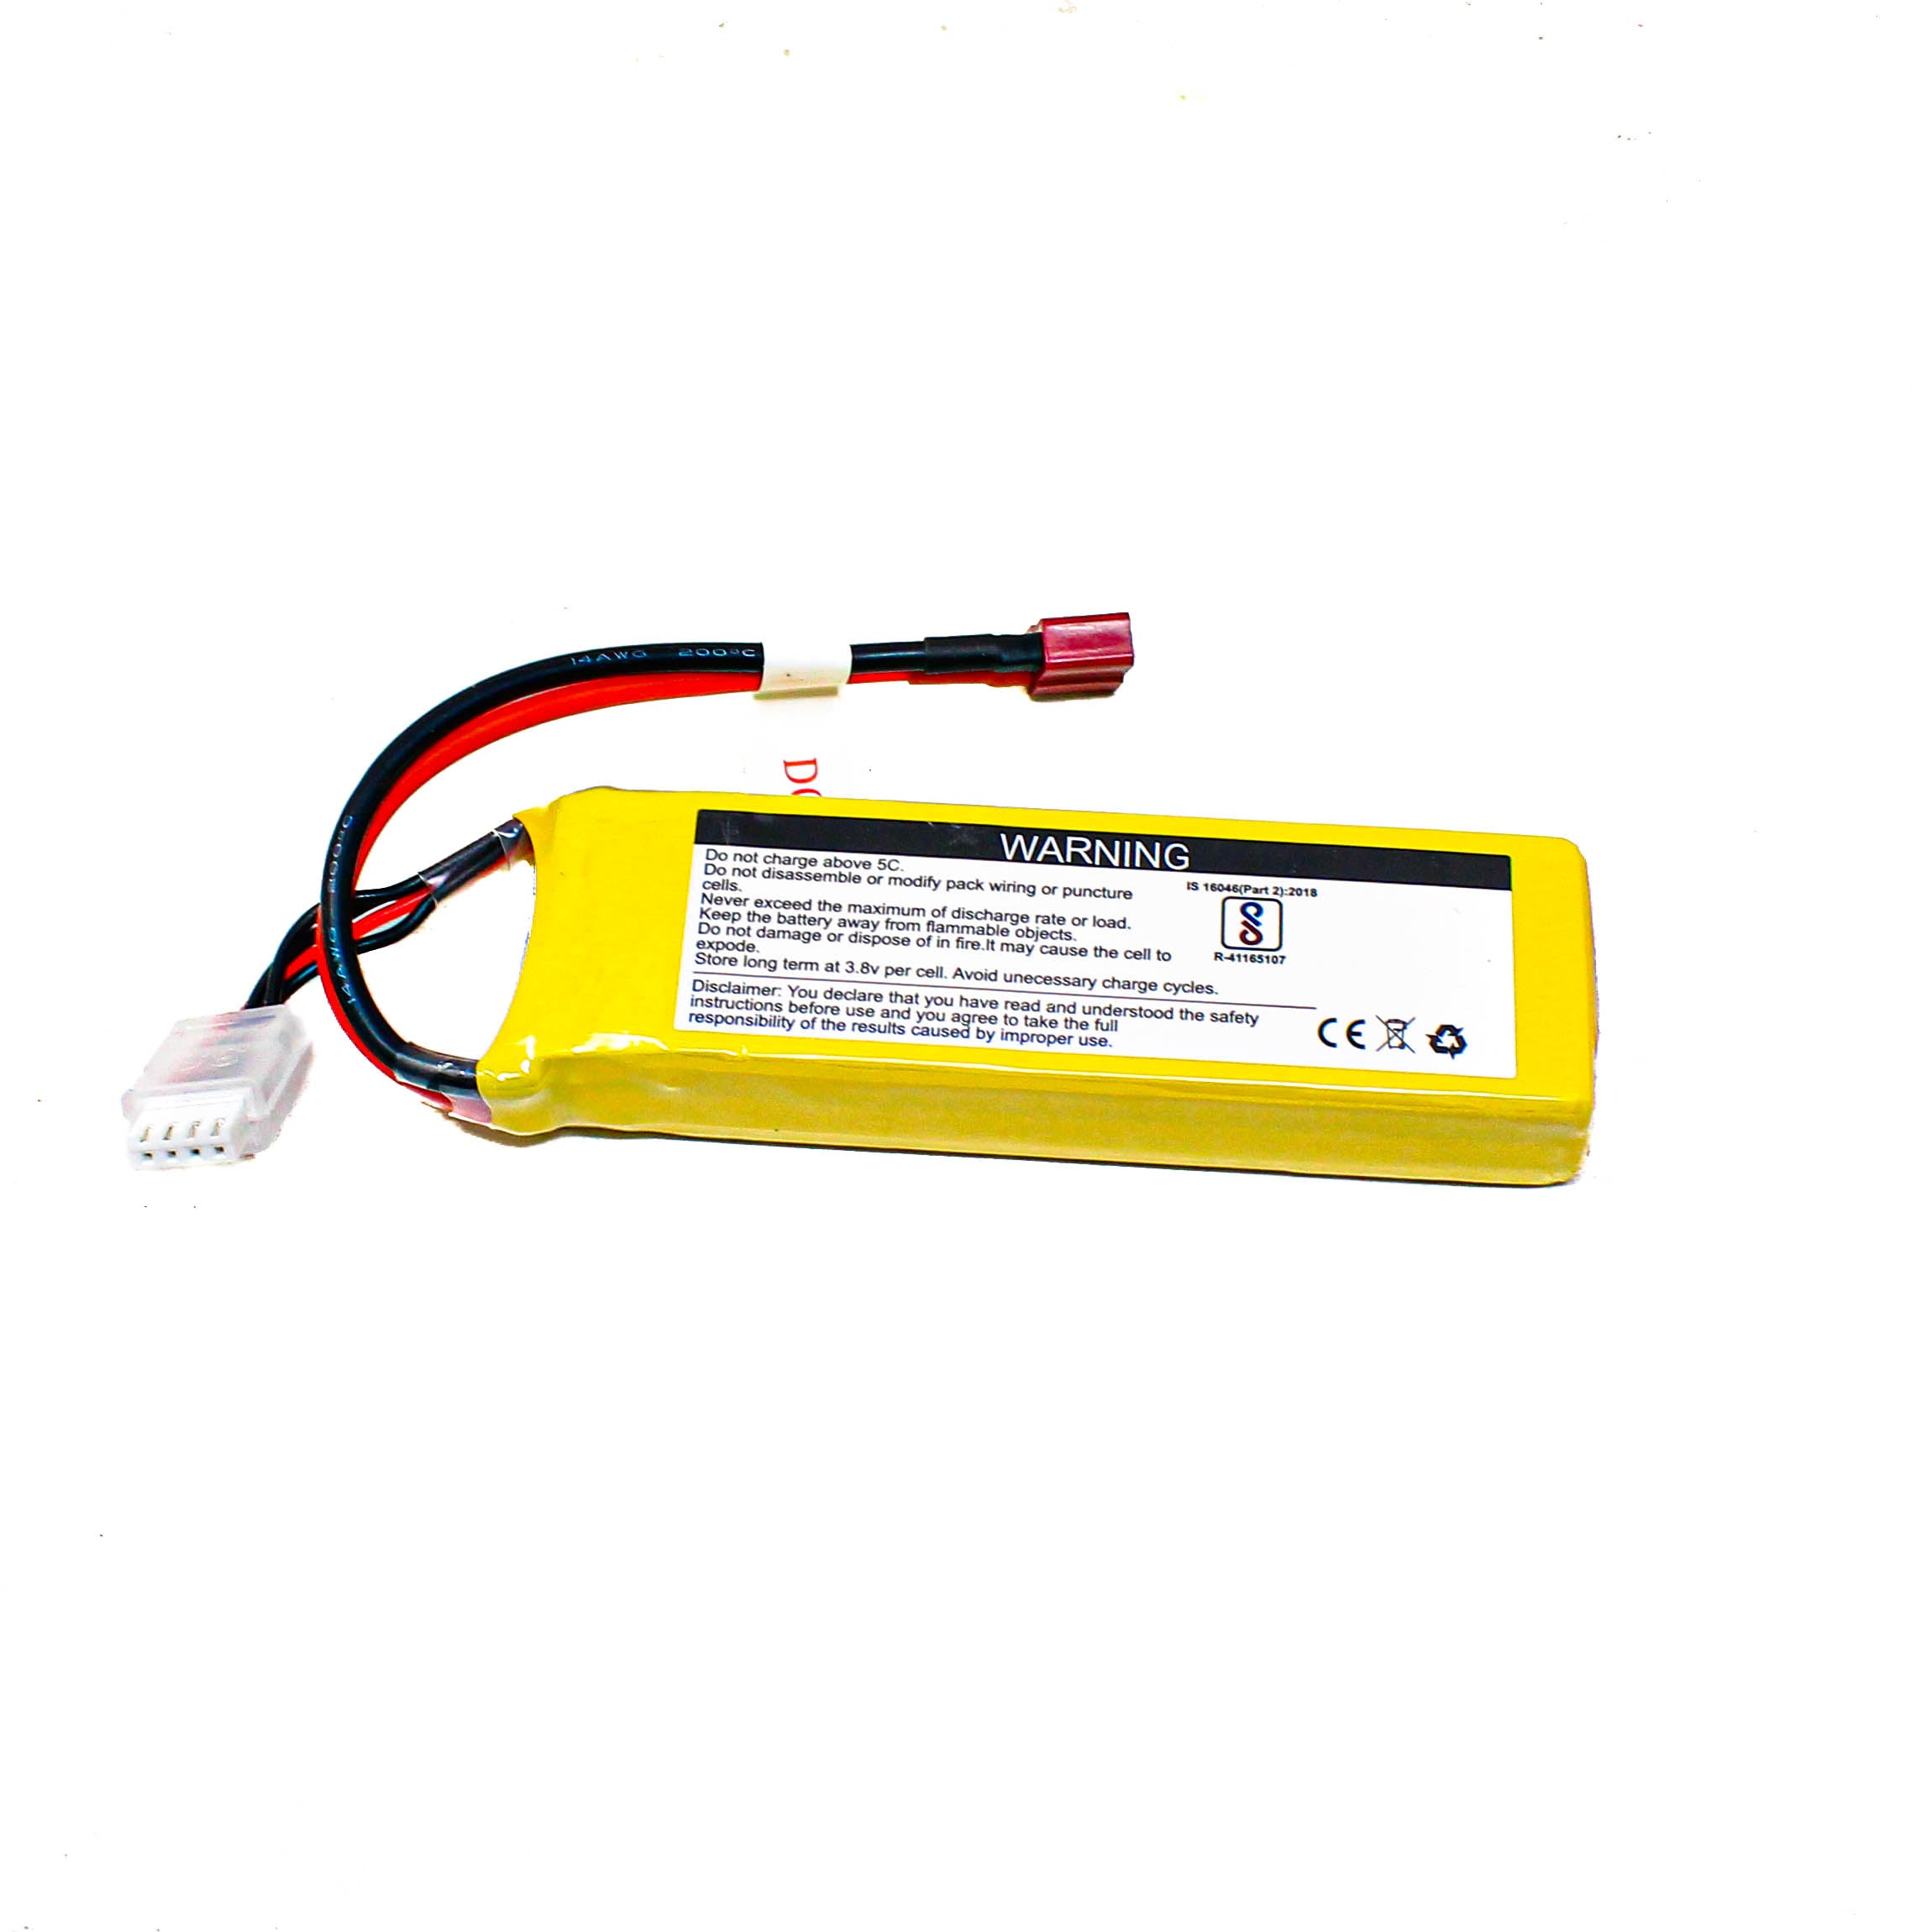 Lemon 2200mAh 3S 30C/60C Lithium Polymer Battery Pack